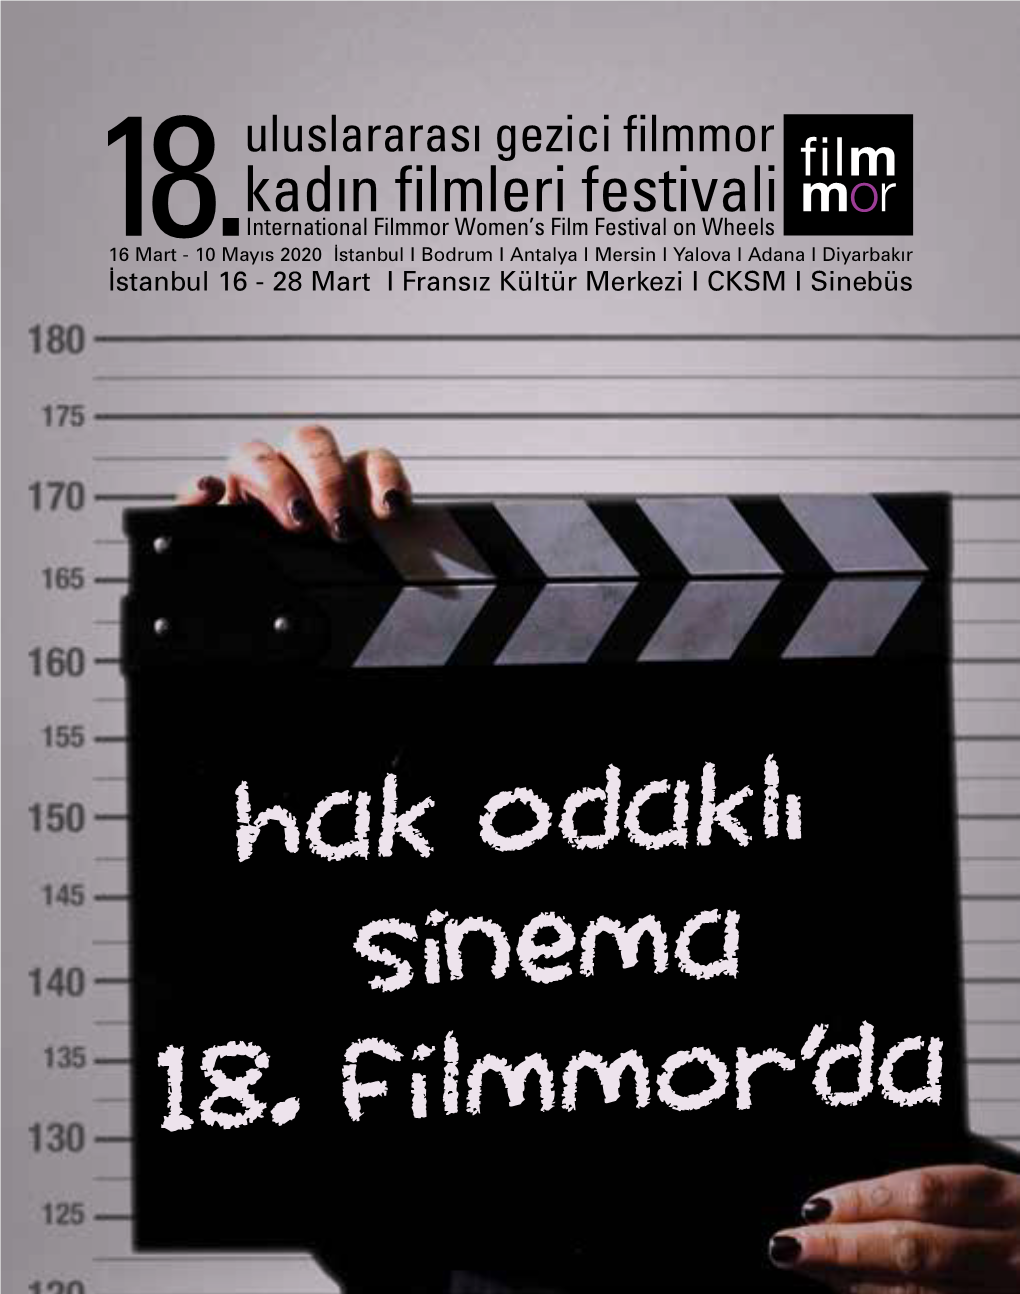 İstanbul 16 - 28 Mart I Fransız Kültür Merkezi I CKSM I Sinebüs Uluslararası Gezici Filmmor Kadın Filmleri Festivali